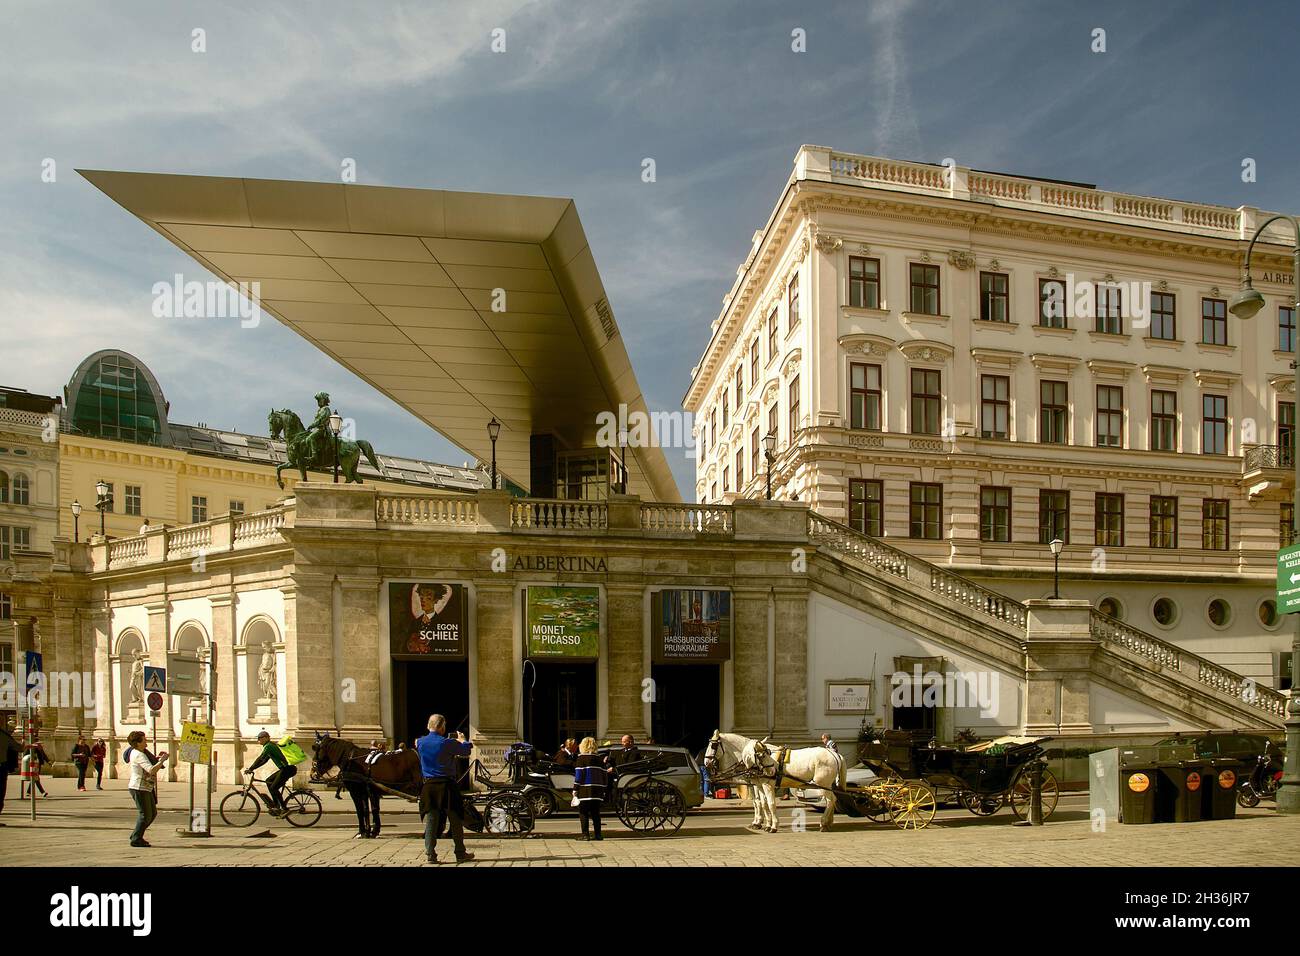 The Albertina Museum, Vienna. Stock Photo